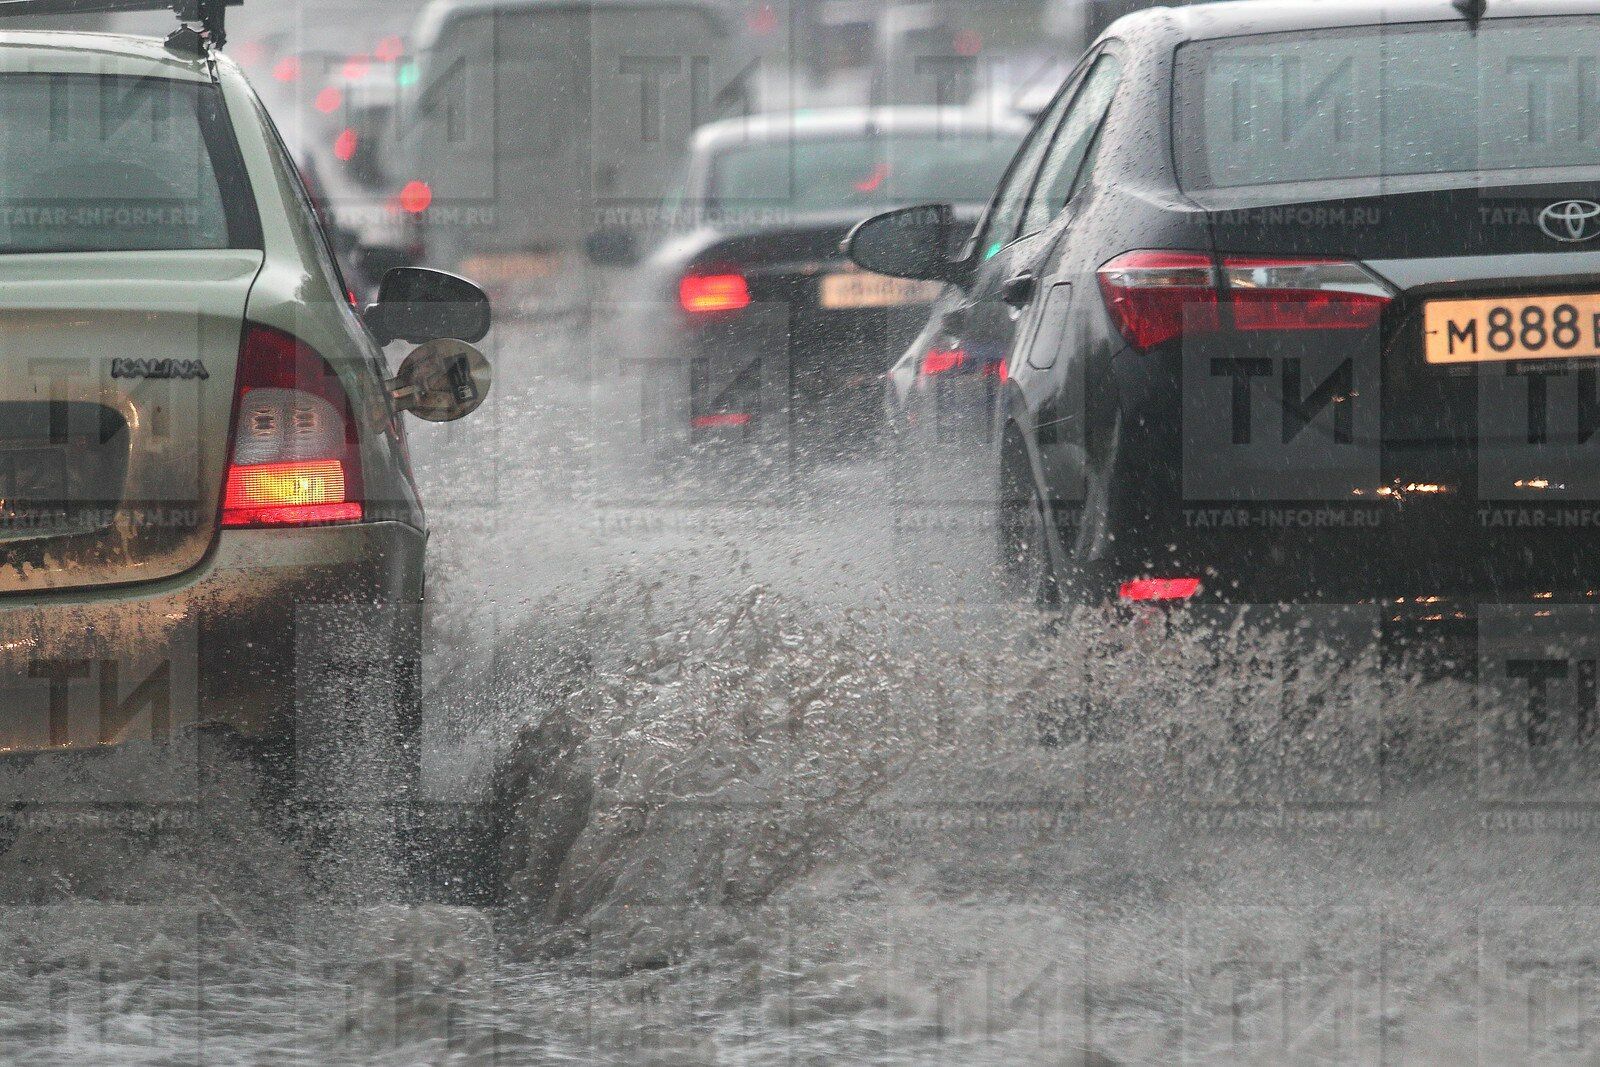 Татарстанцев предупреждают об ухудшении погодных условий